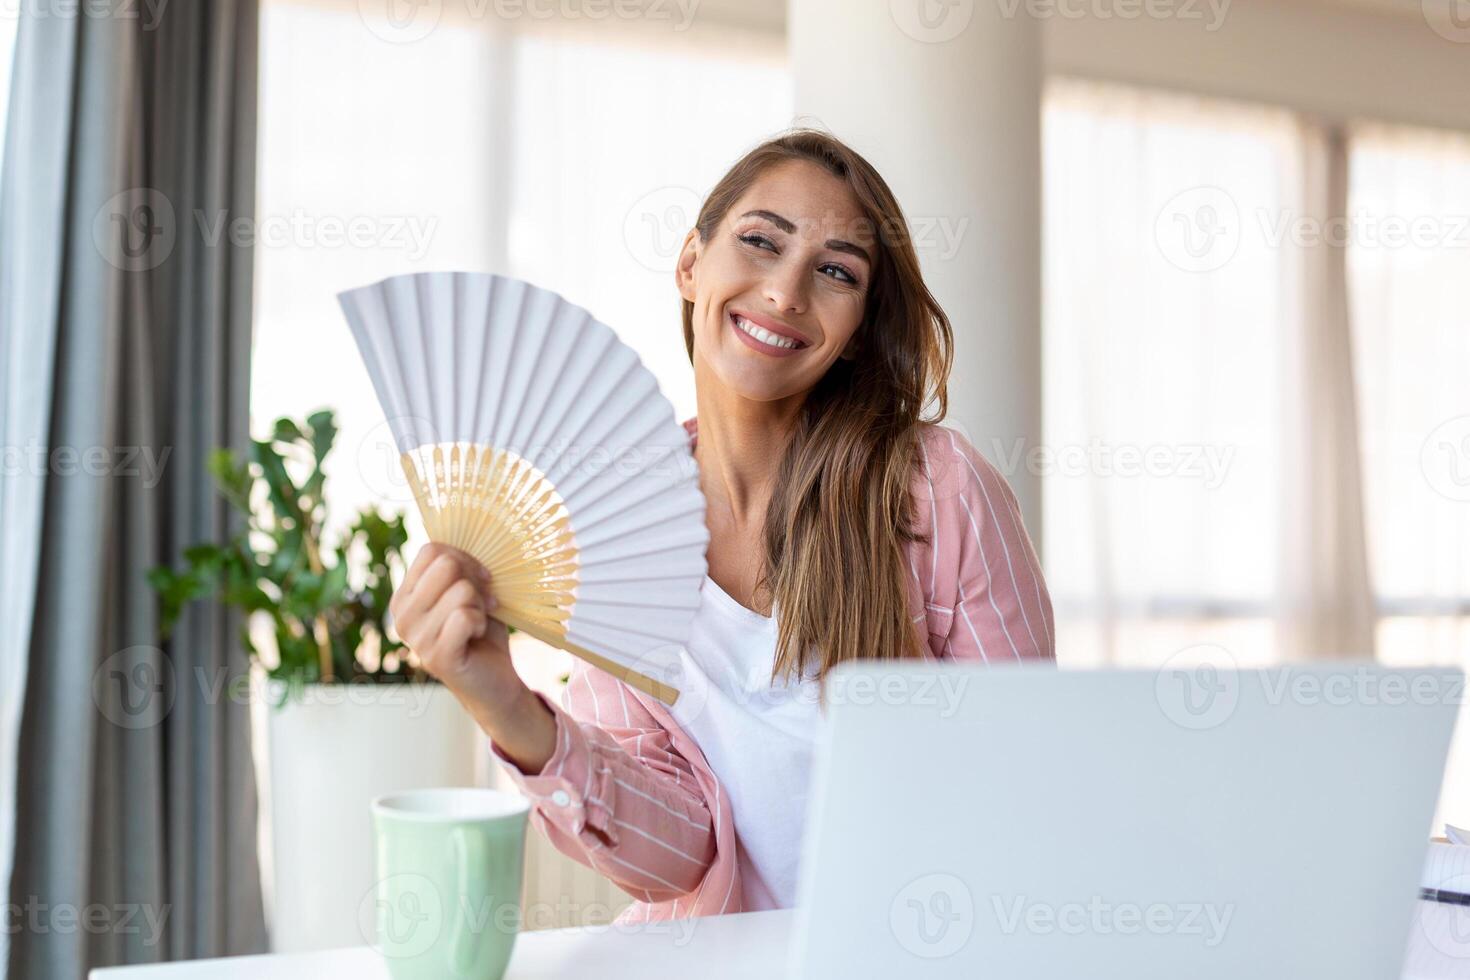 trött överhettad ung kvinna håll Vinka fläkt lida från värme svettas inomhus- arbete på bärbar dator på Hem kontor, irriterad kvinna känna obekväm varm sommar väder problem Nej luft balsam begrepp foto